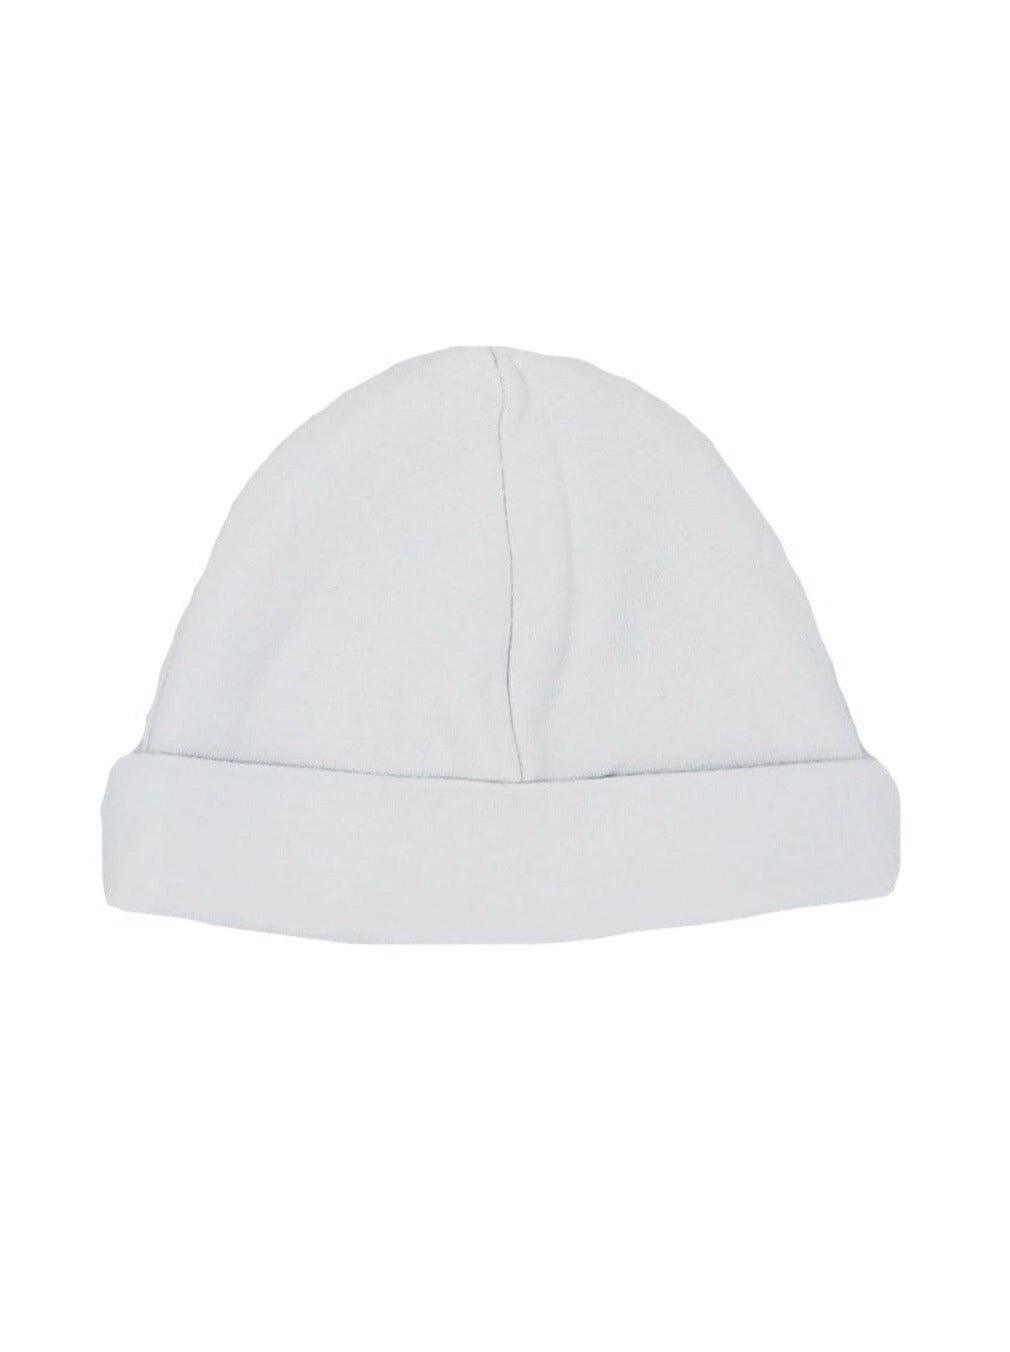 Pale Blue Round Baby Hat Hat Dandelion 